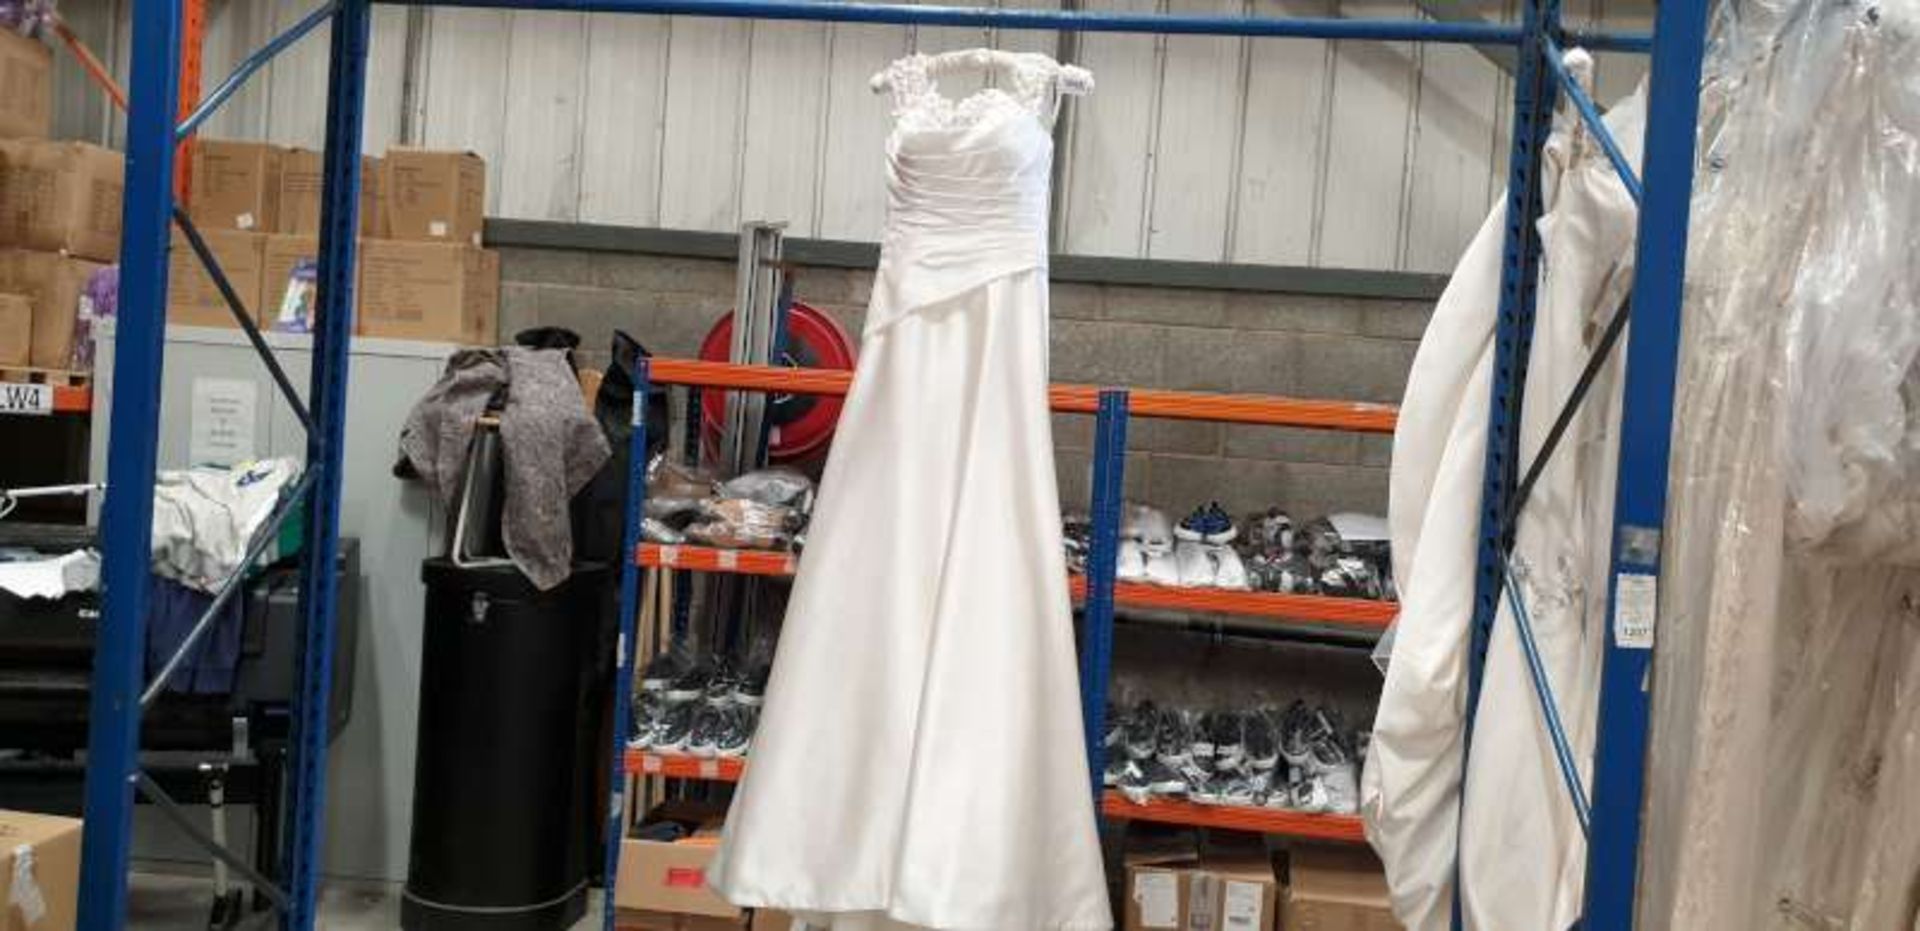 DESIGNER UNKNOWN SIZE 8 OFF WHITE FLOWER STRAP WEDDING DRESS